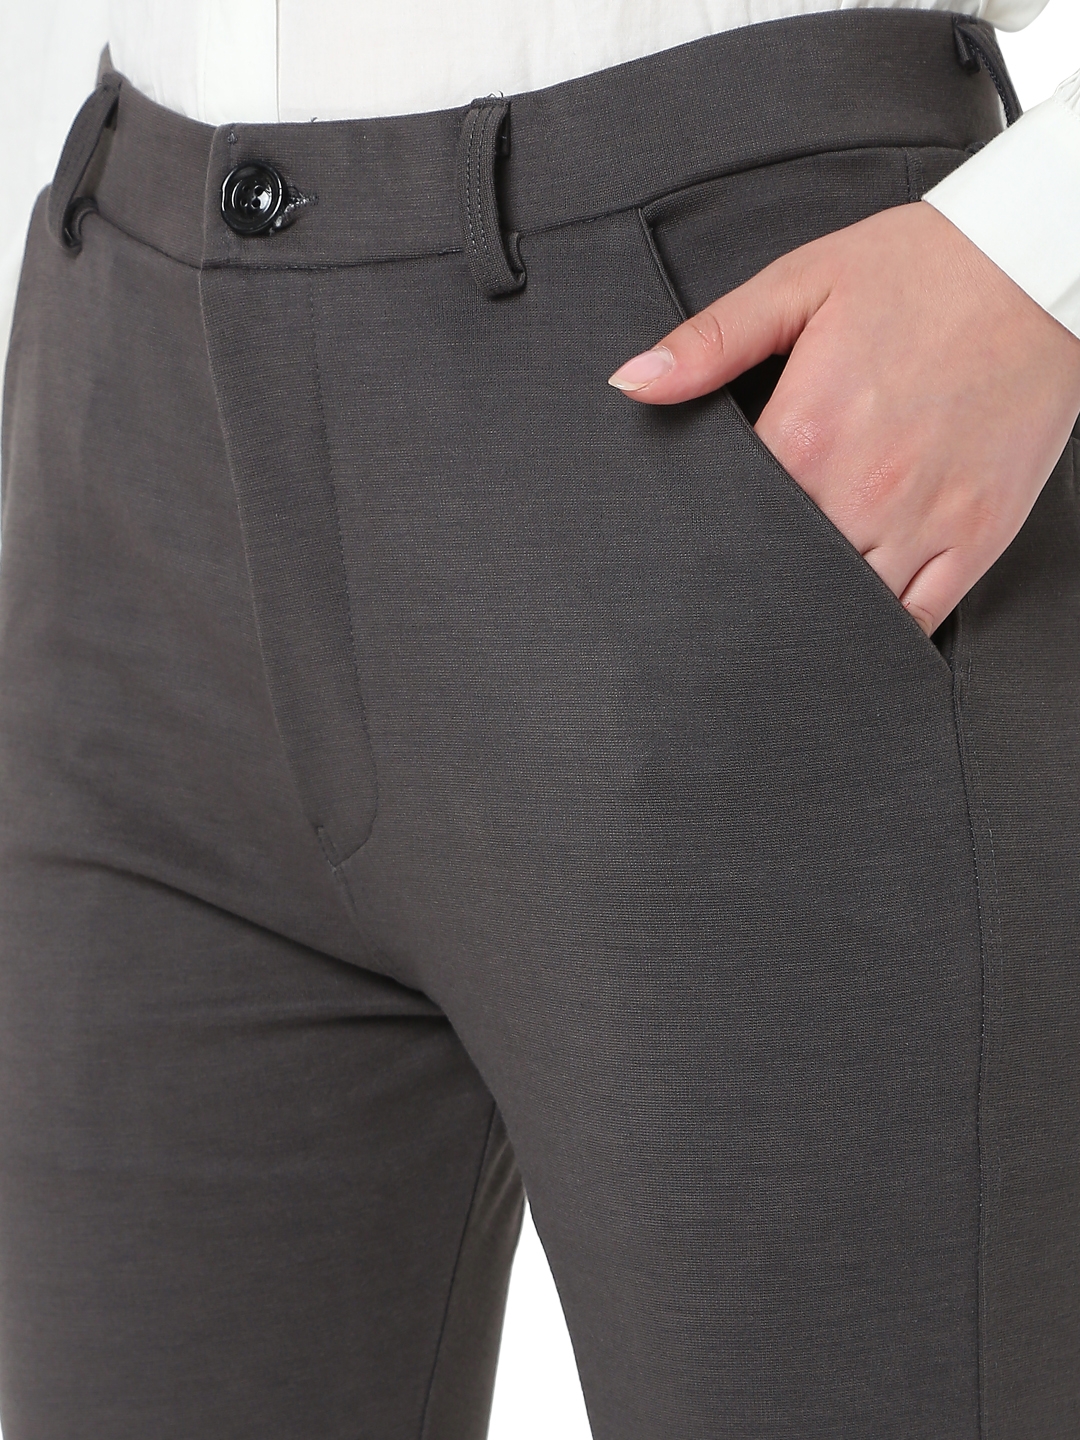 Dark Grey Textured Formal Pants  Women